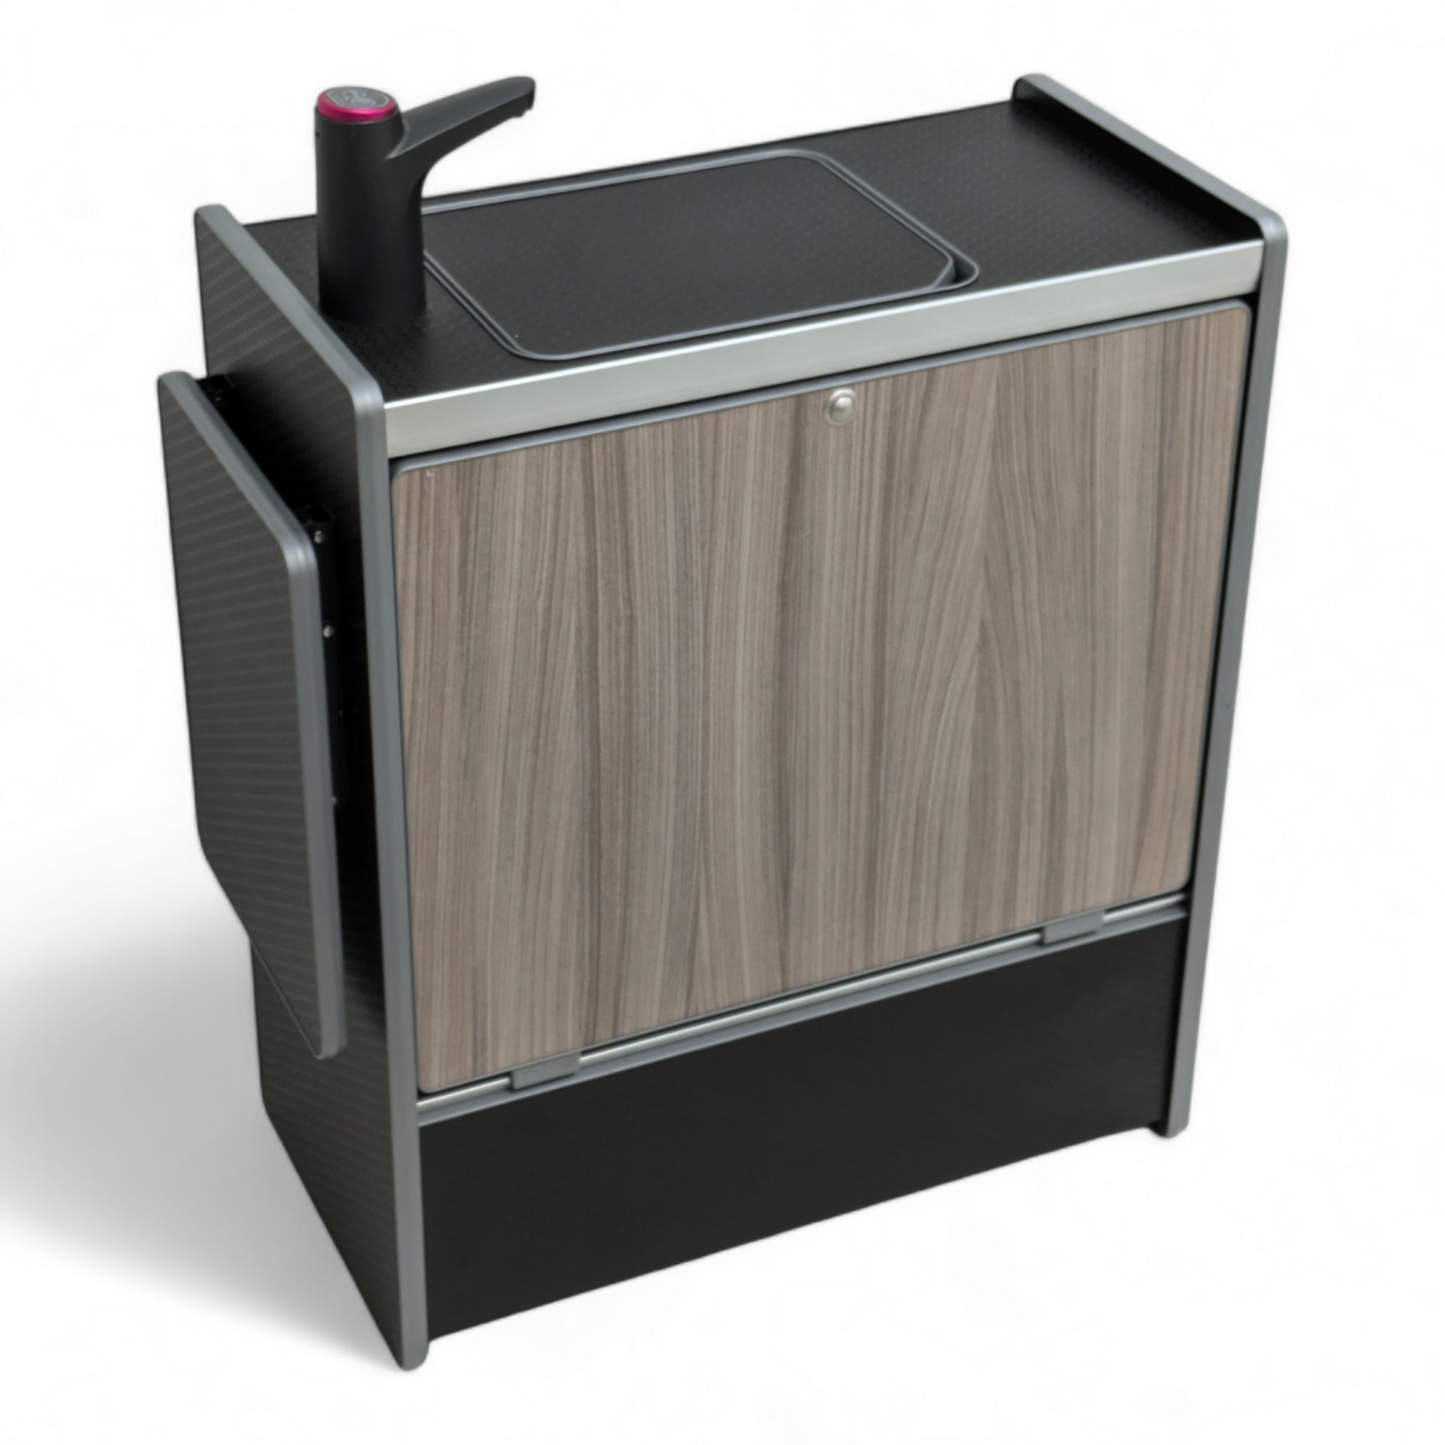 NEW Vangear Nano-Pod 2.2 campervan kitchen-Black with Driftwood door